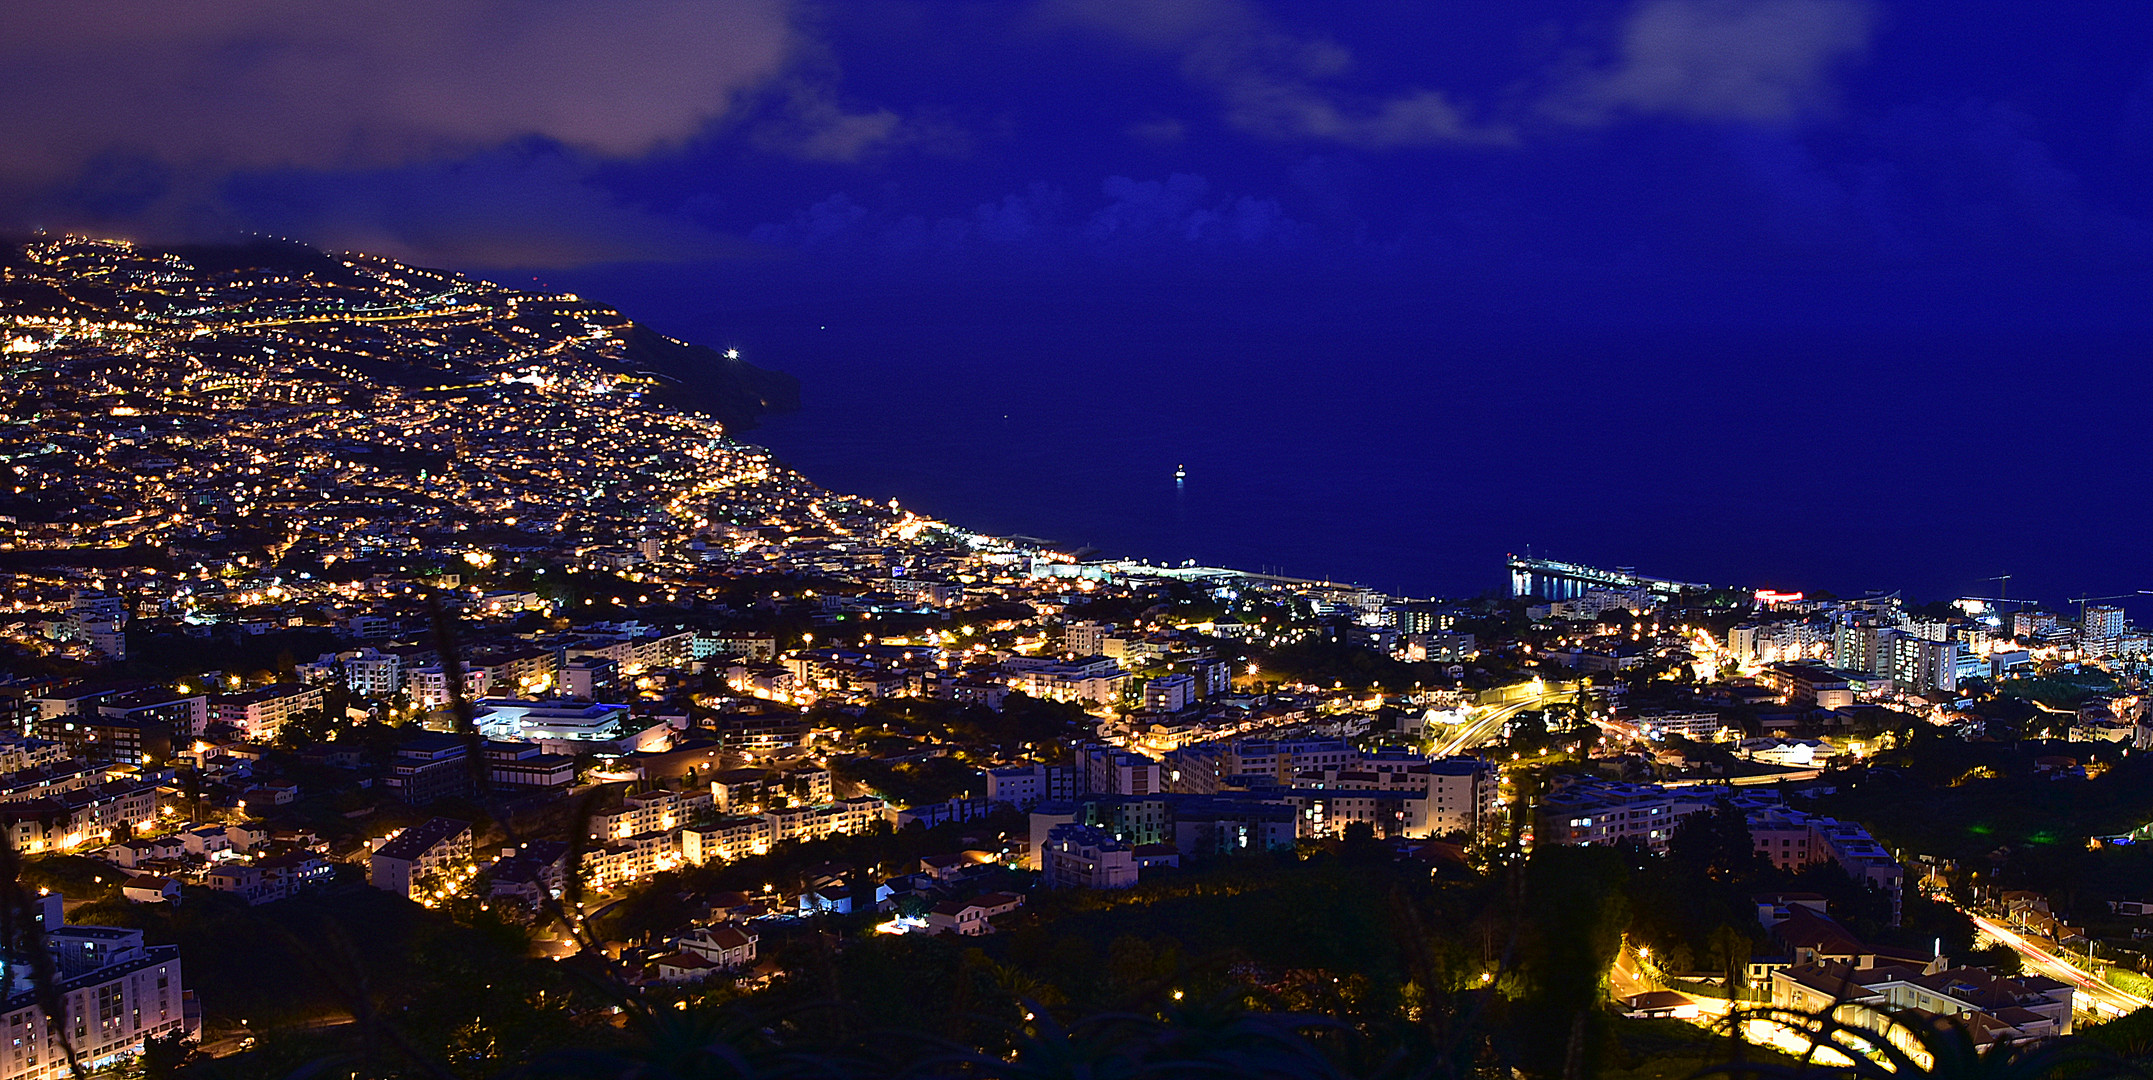 Blaue Stunde über Funchal 